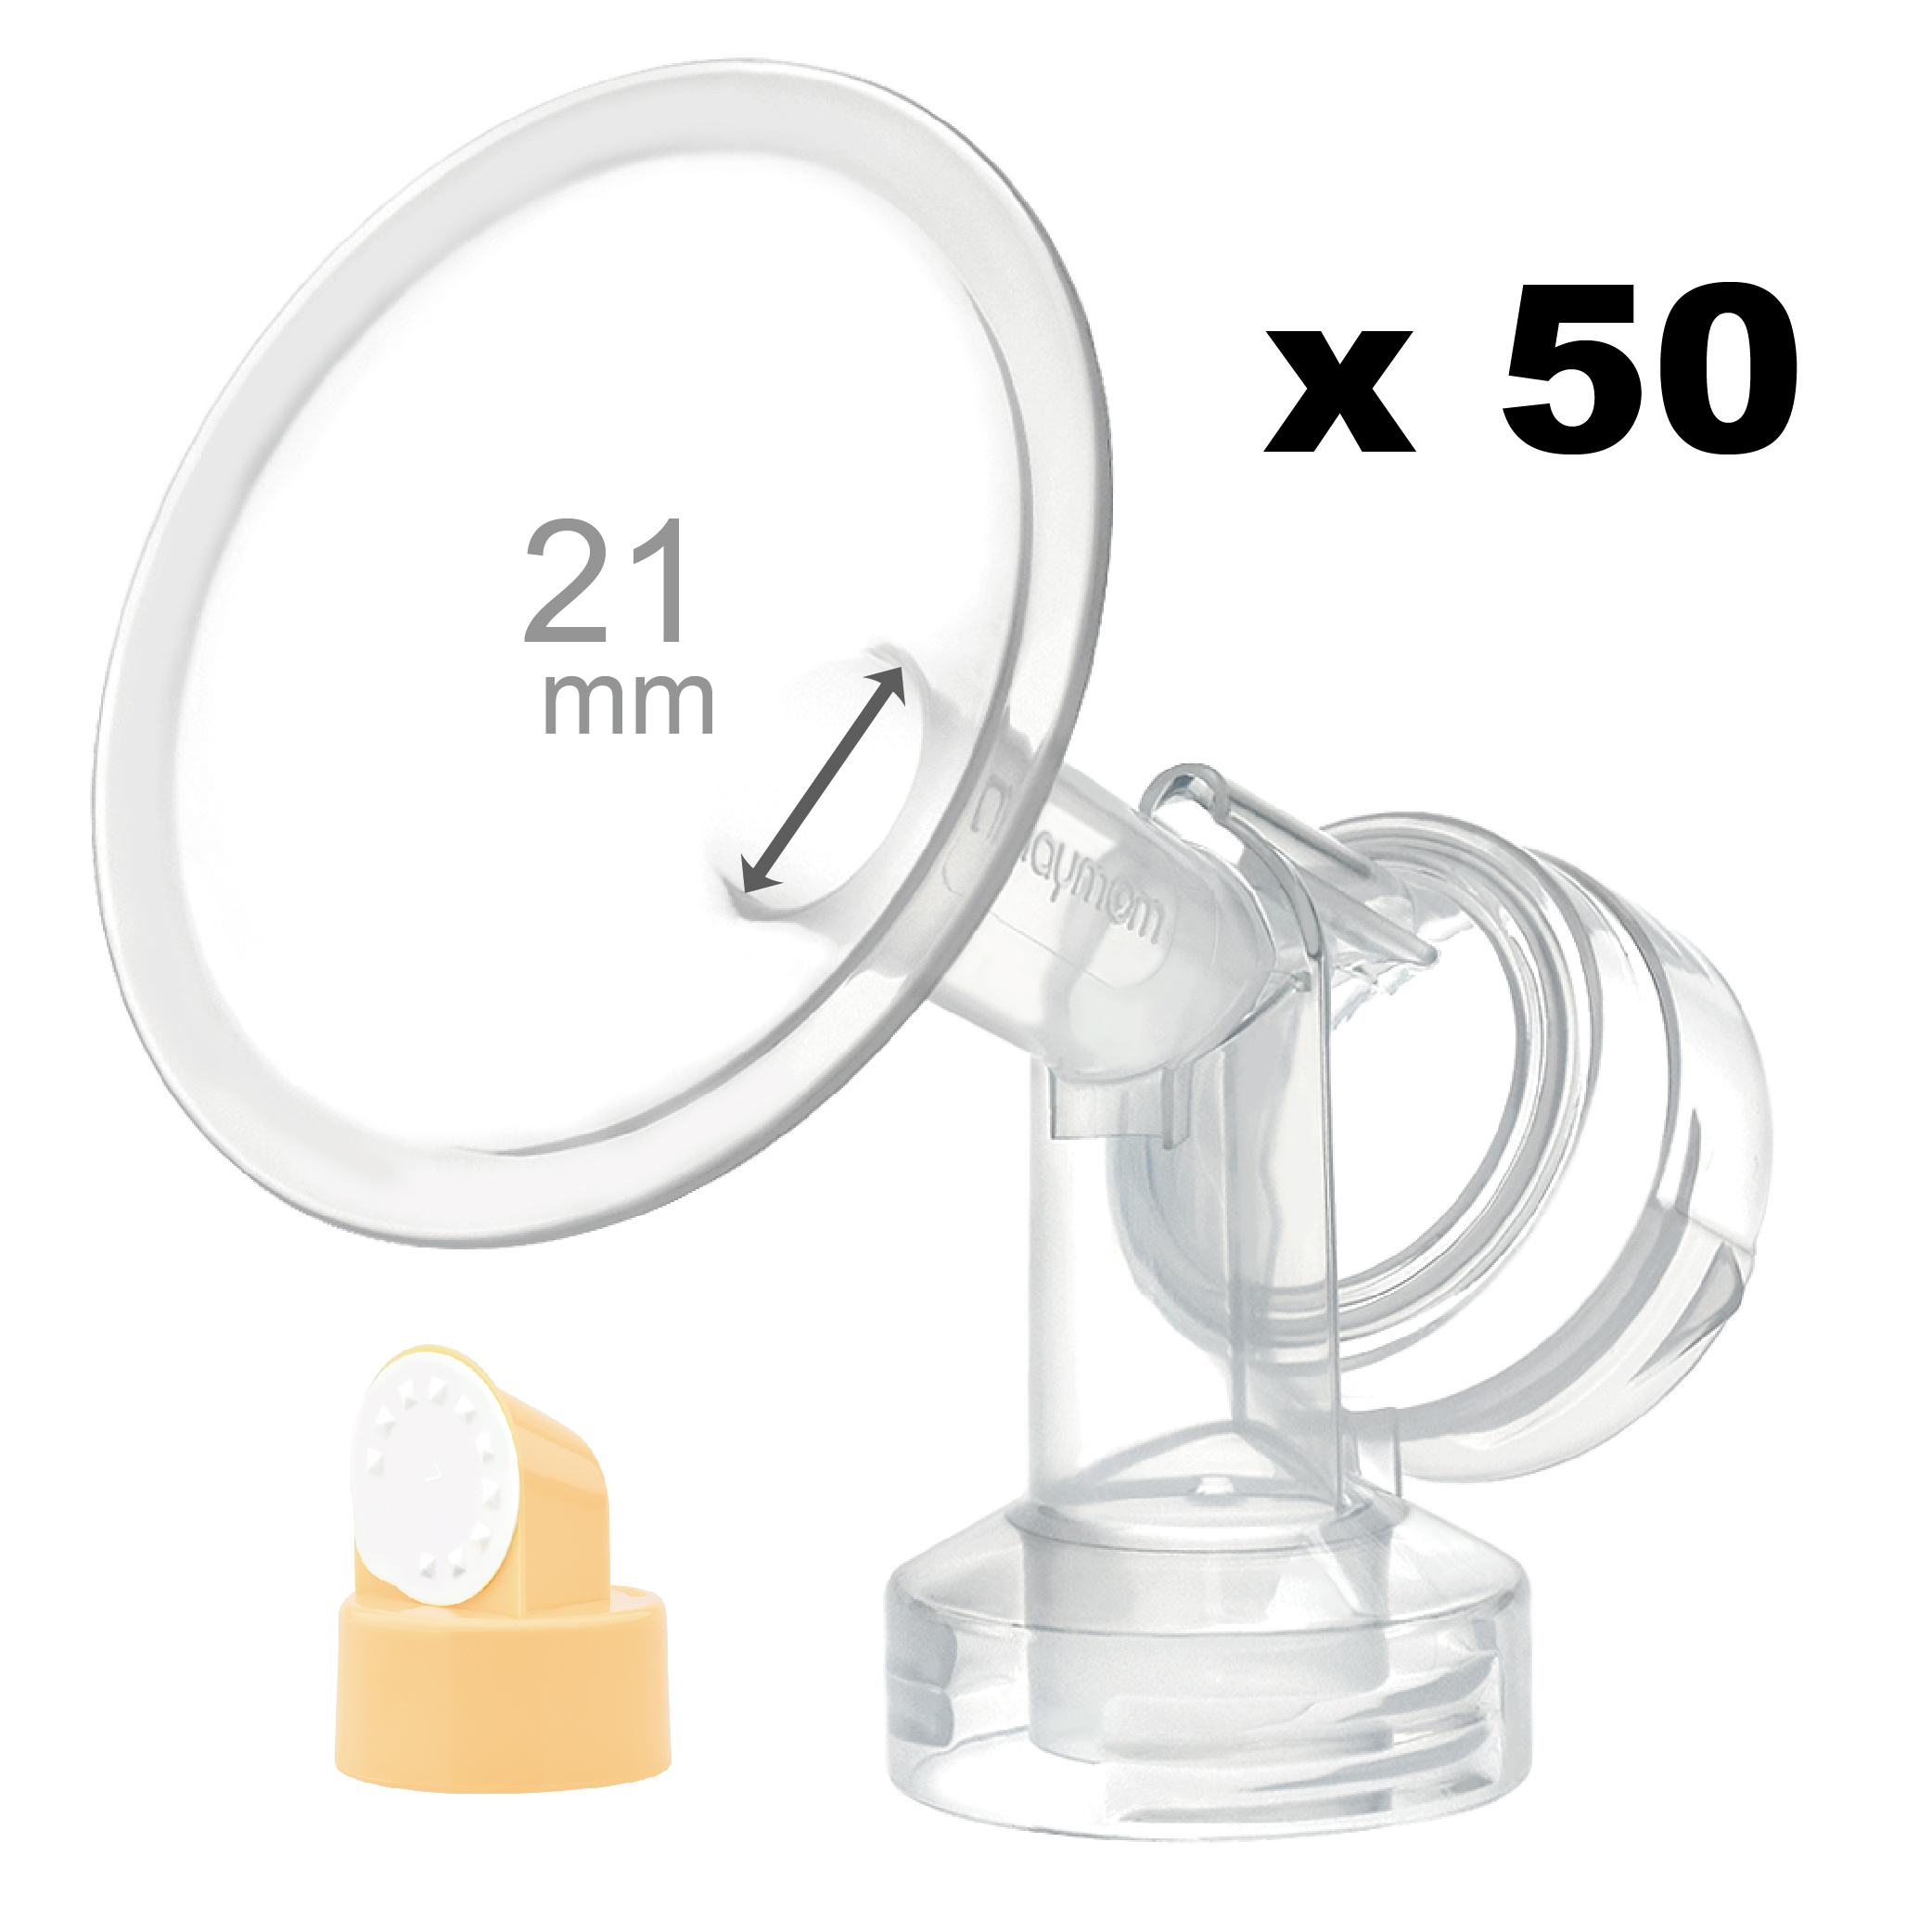 Breastshield (flange) with valve/membrane for Medela, 21 mm, 50 pc; Narrow (Standard) Bottle Neck